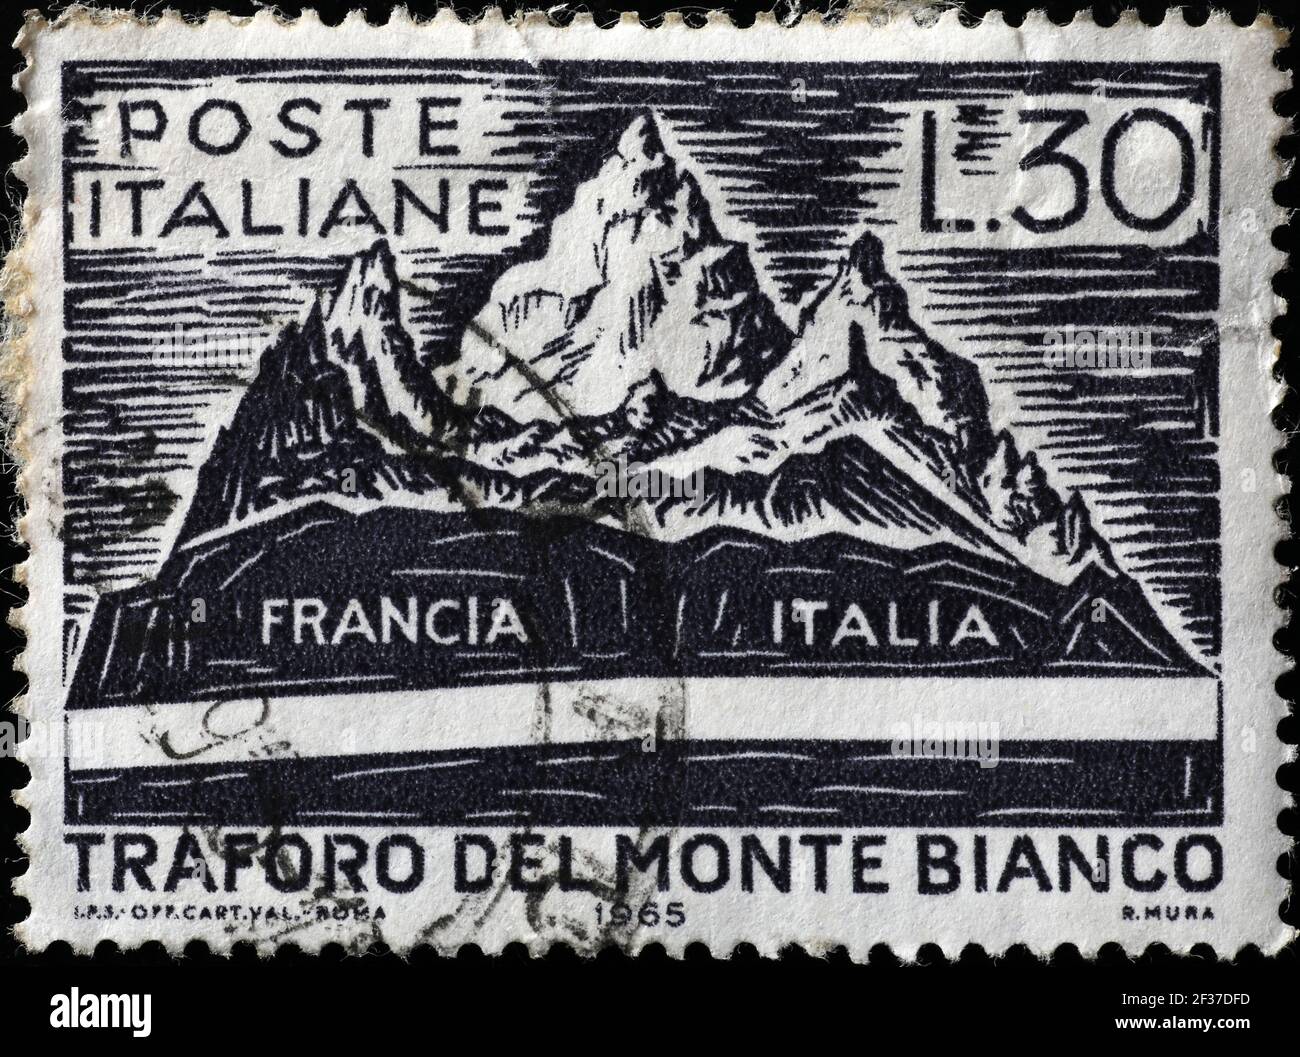 Célébration du tunnel du Mont blanc sur timbre italien Banque D'Images